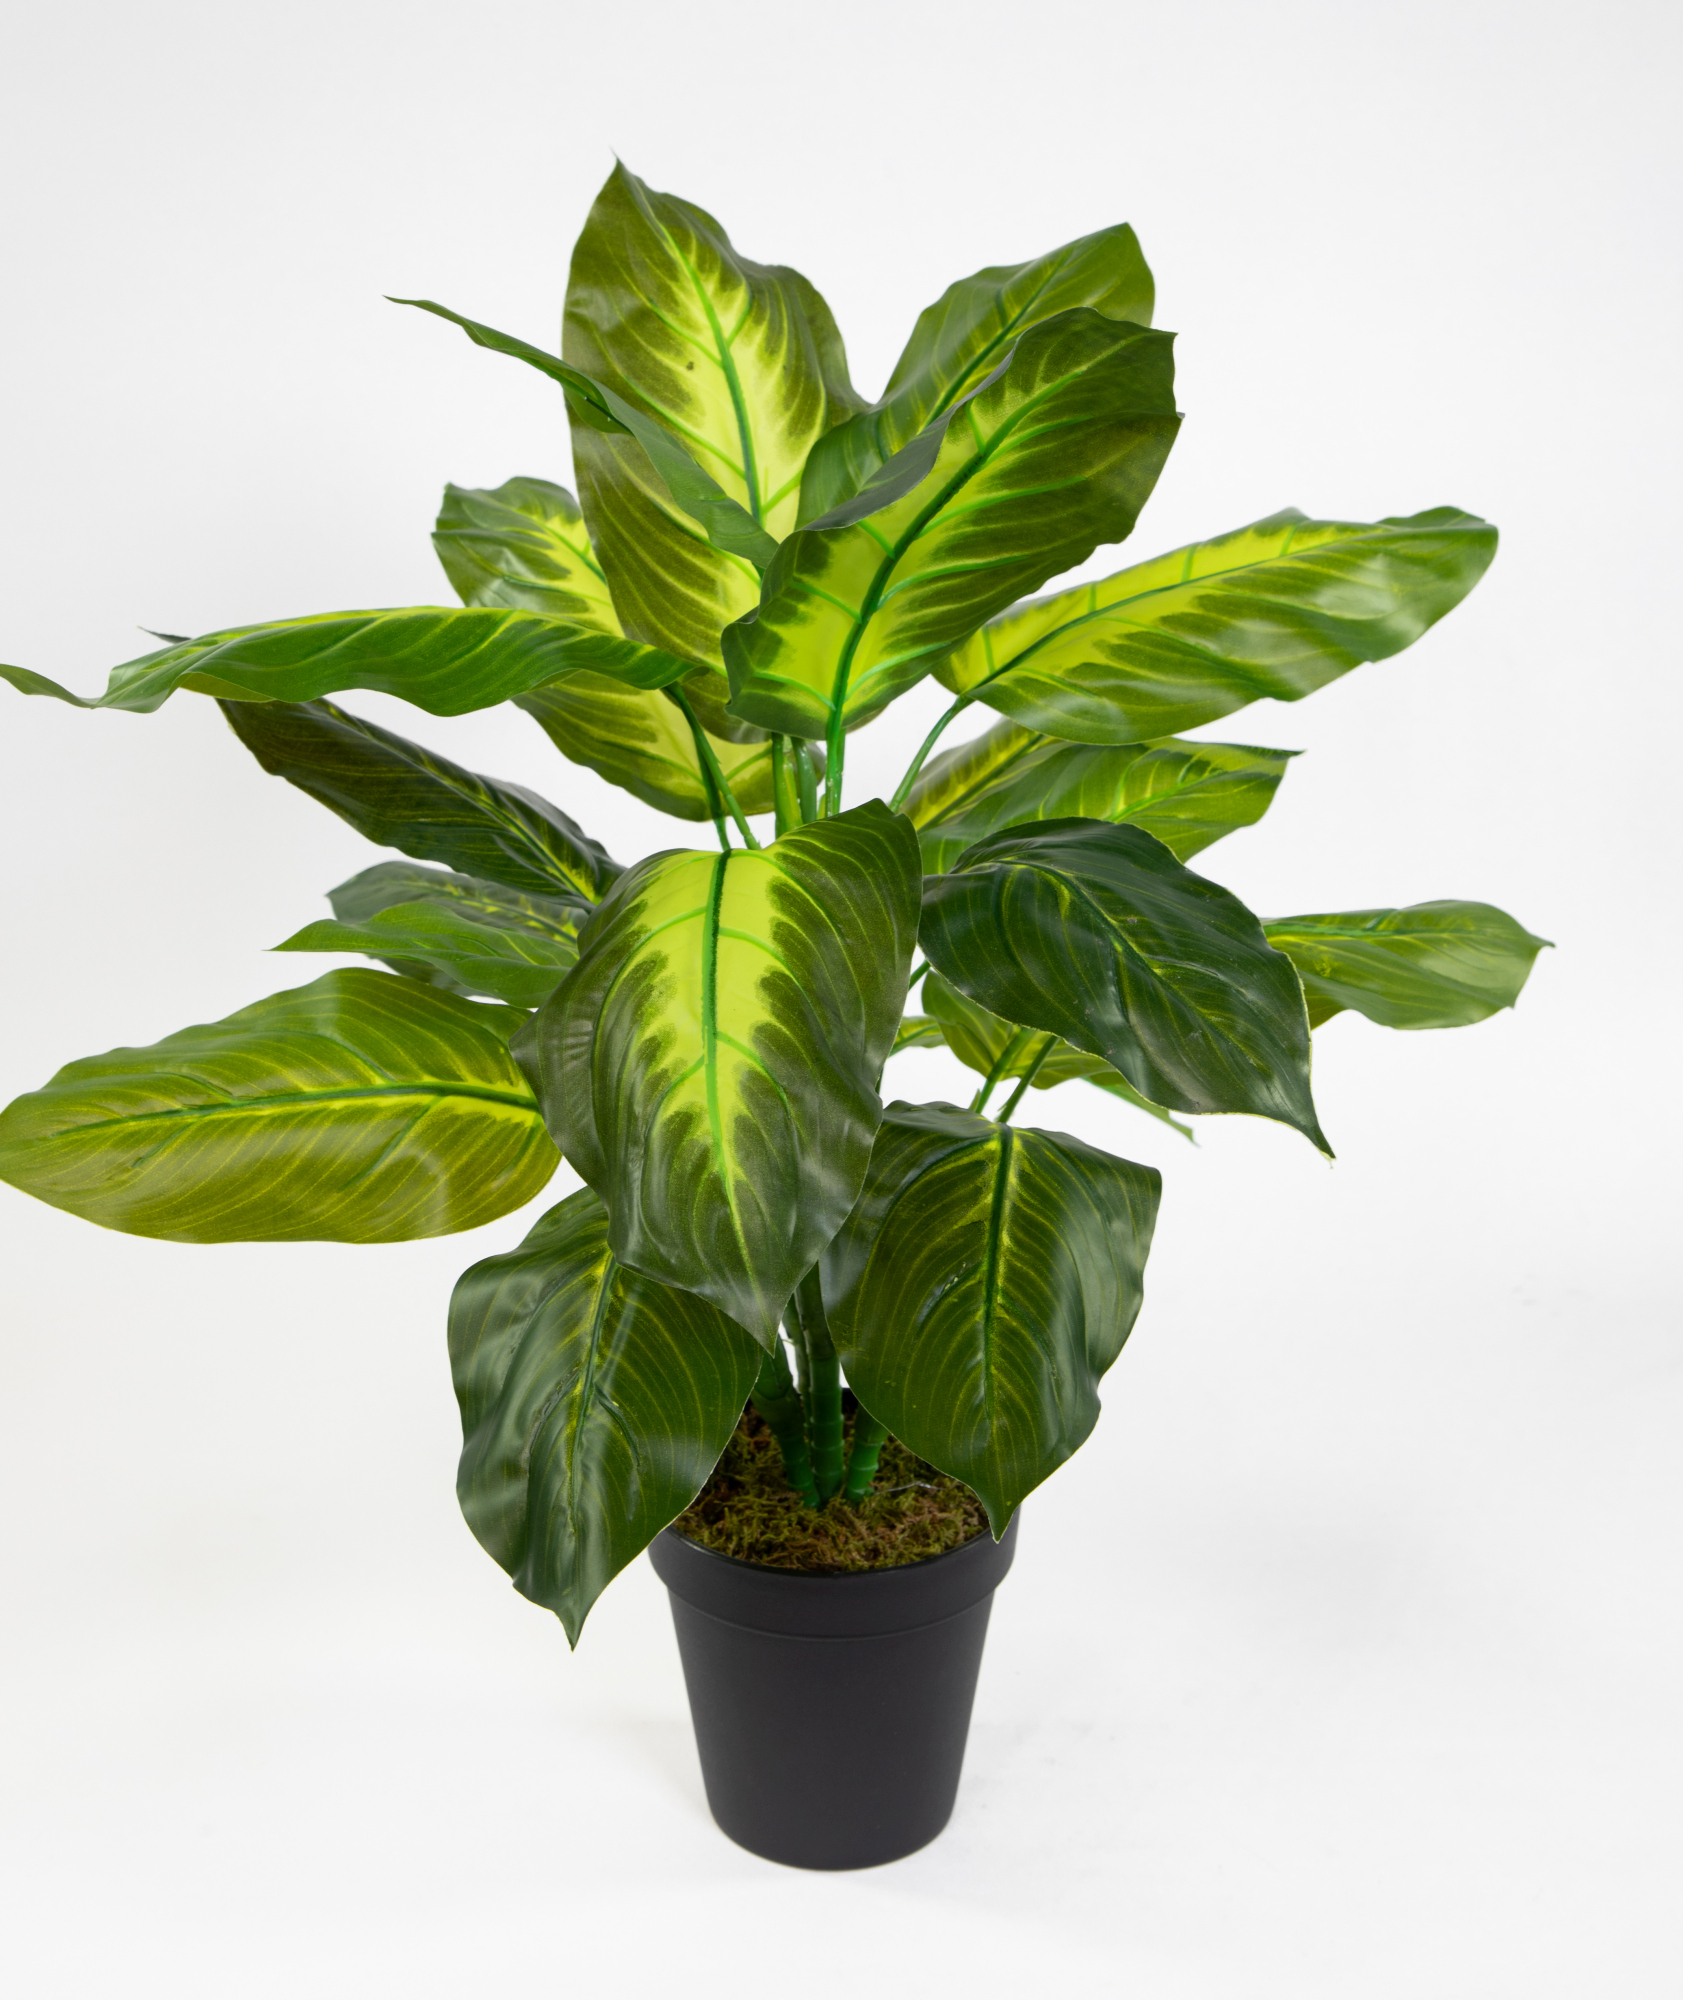 Philo Real Touch künstliche 52cm im Topf Kunstpflanzen Pflanzen ZF Philopflanze grün-hellgrün